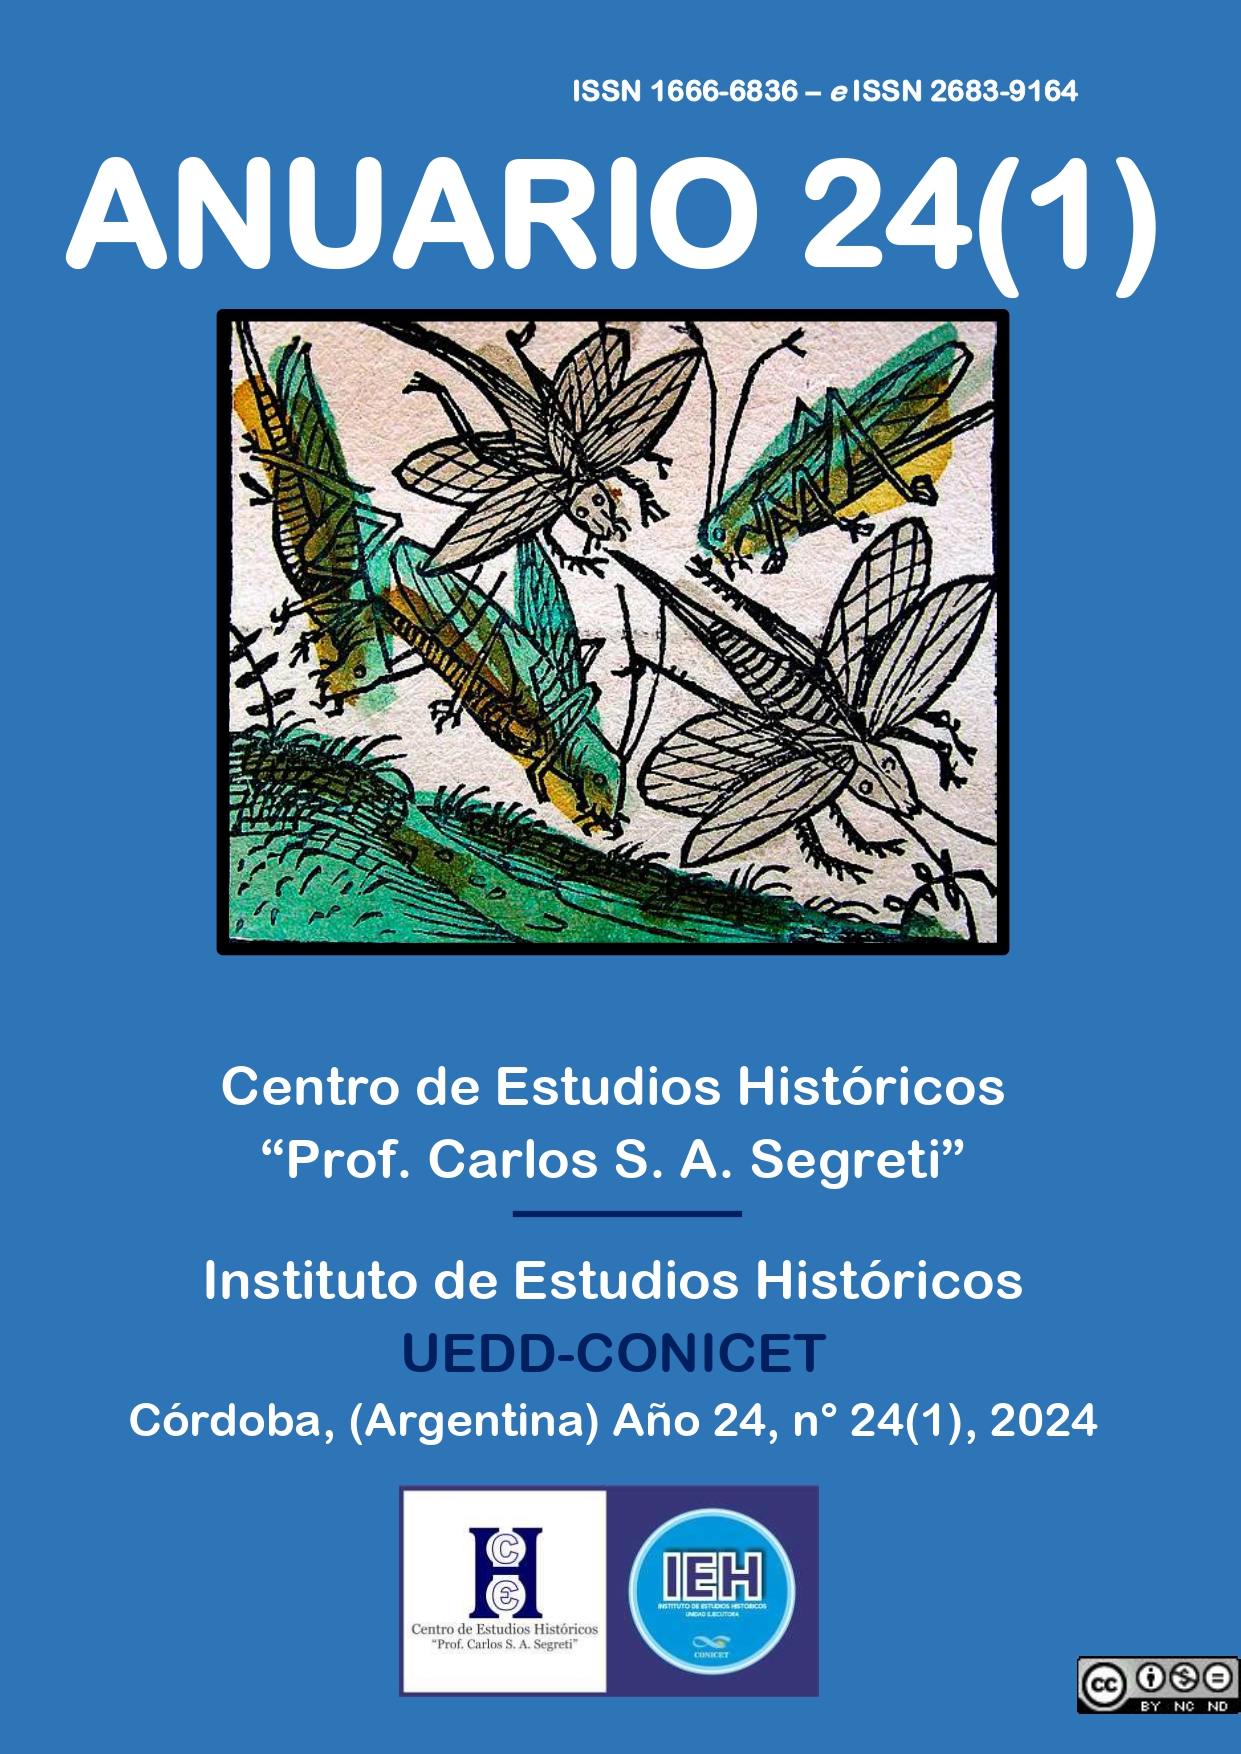 					View Vol. 24 No. 1 (2024): Anuario del Centro de Estudios Históricos "Prof. Carlos S. A. Segreti" 24(1)
				